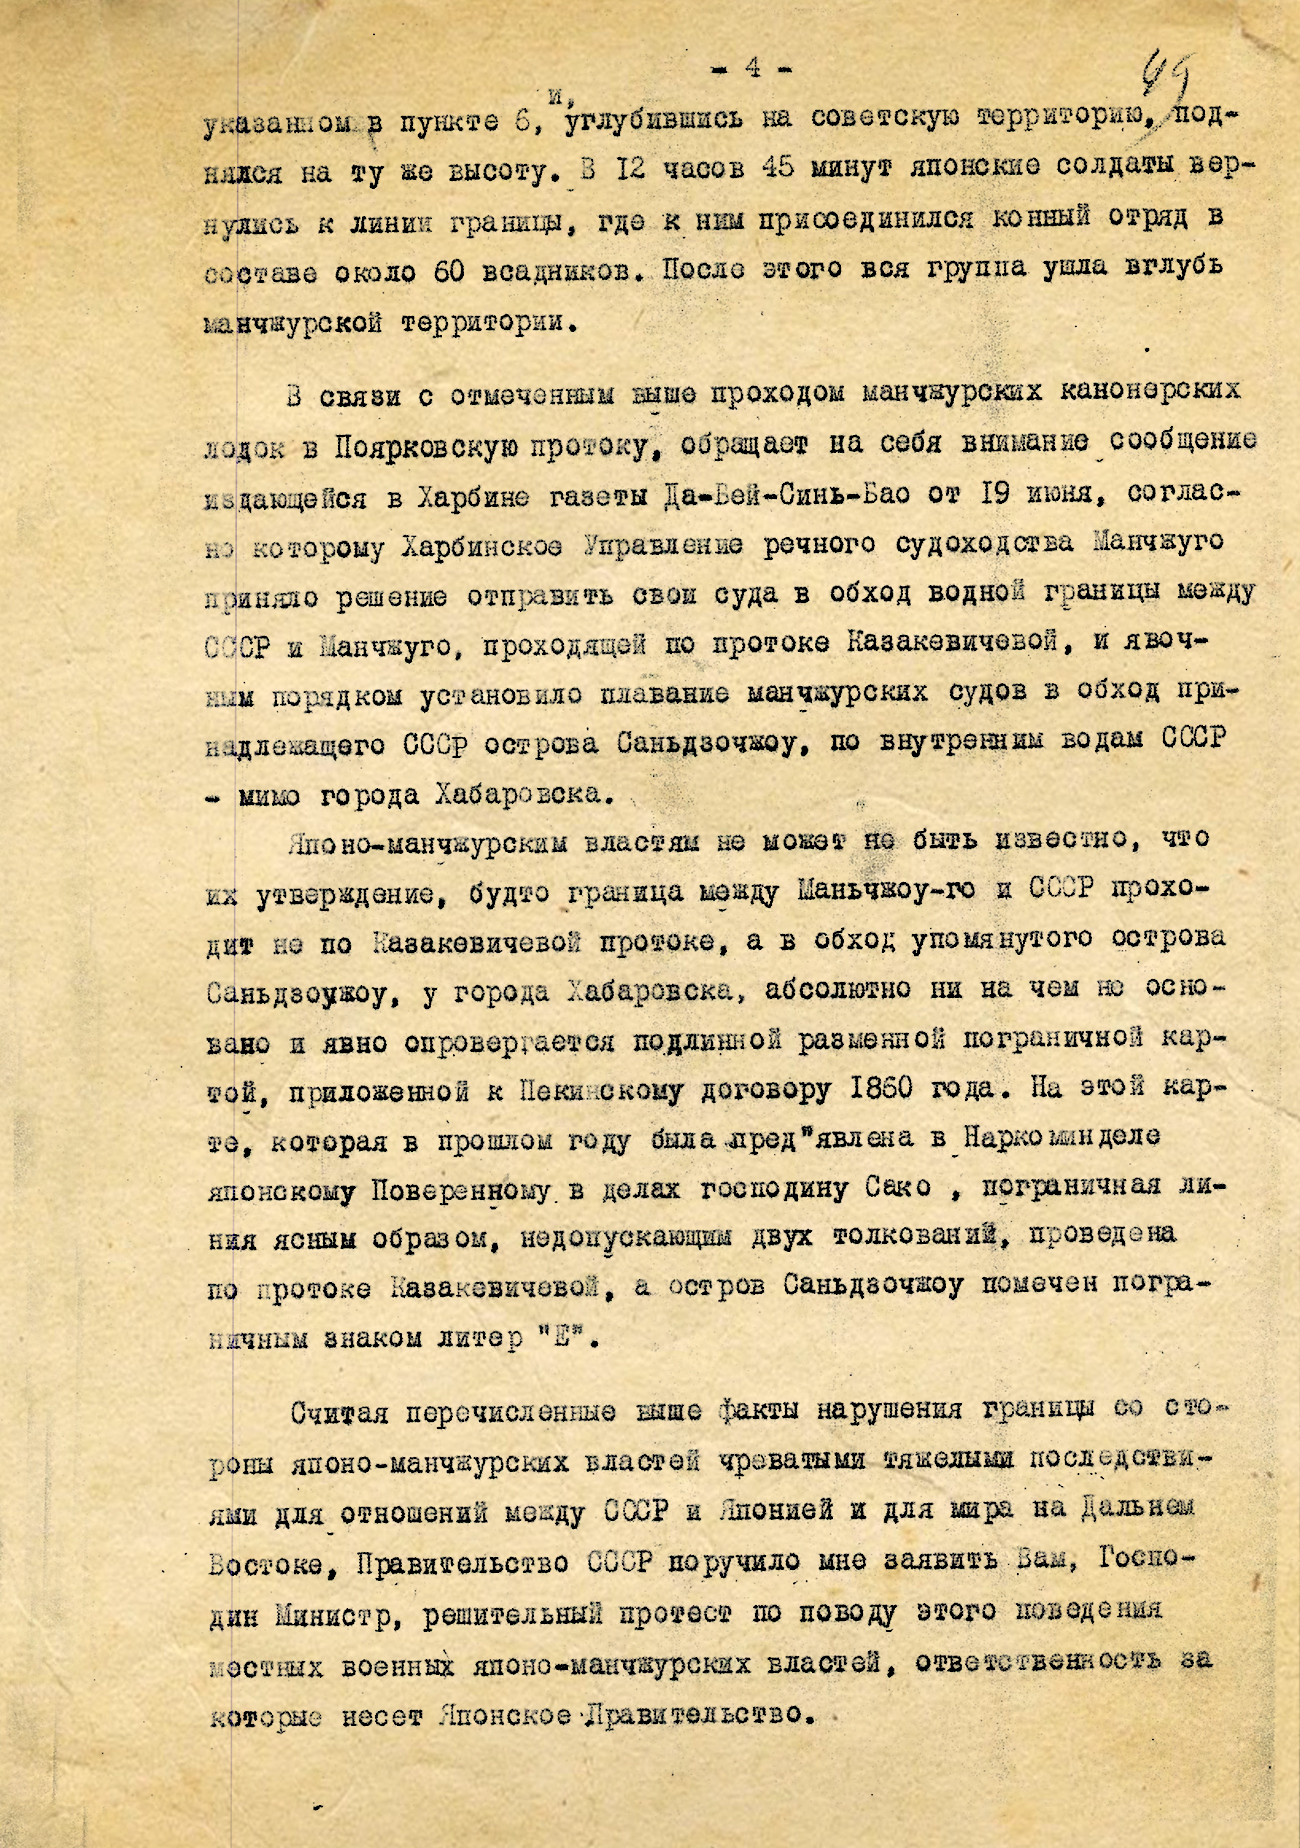 Нота Советского Правительства министру иностранных дел Японии, Его Превосходительству господину Коки Хирота 1 июля 1935 года